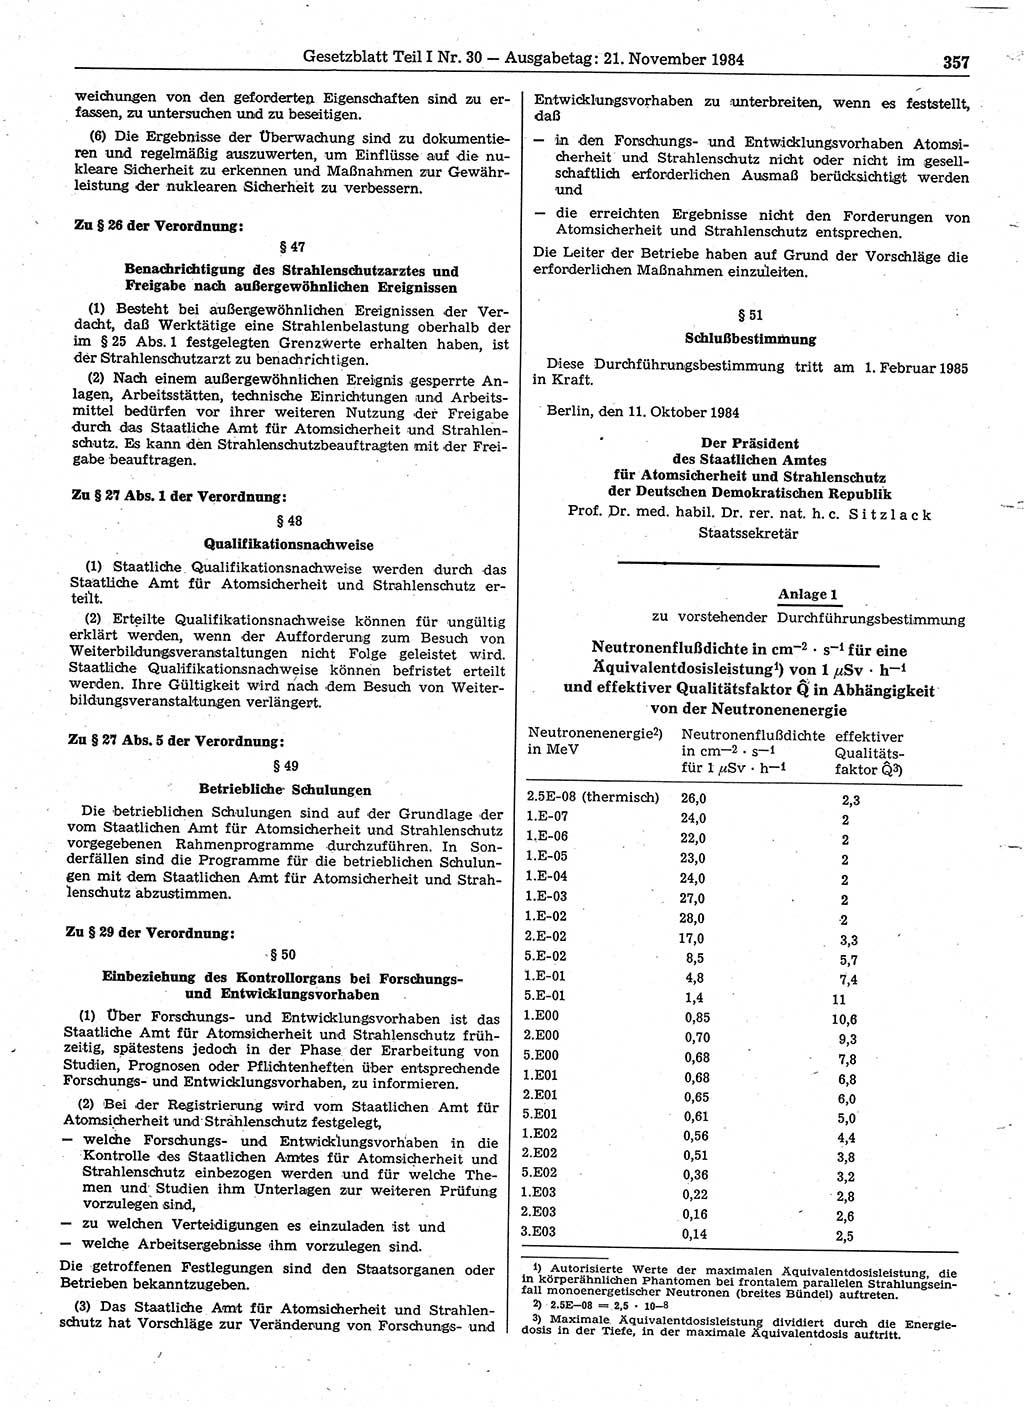 Gesetzblatt (GBl.) der Deutschen Demokratischen Republik (DDR) Teil Ⅰ 1984, Seite 357 (GBl. DDR Ⅰ 1984, S. 357)